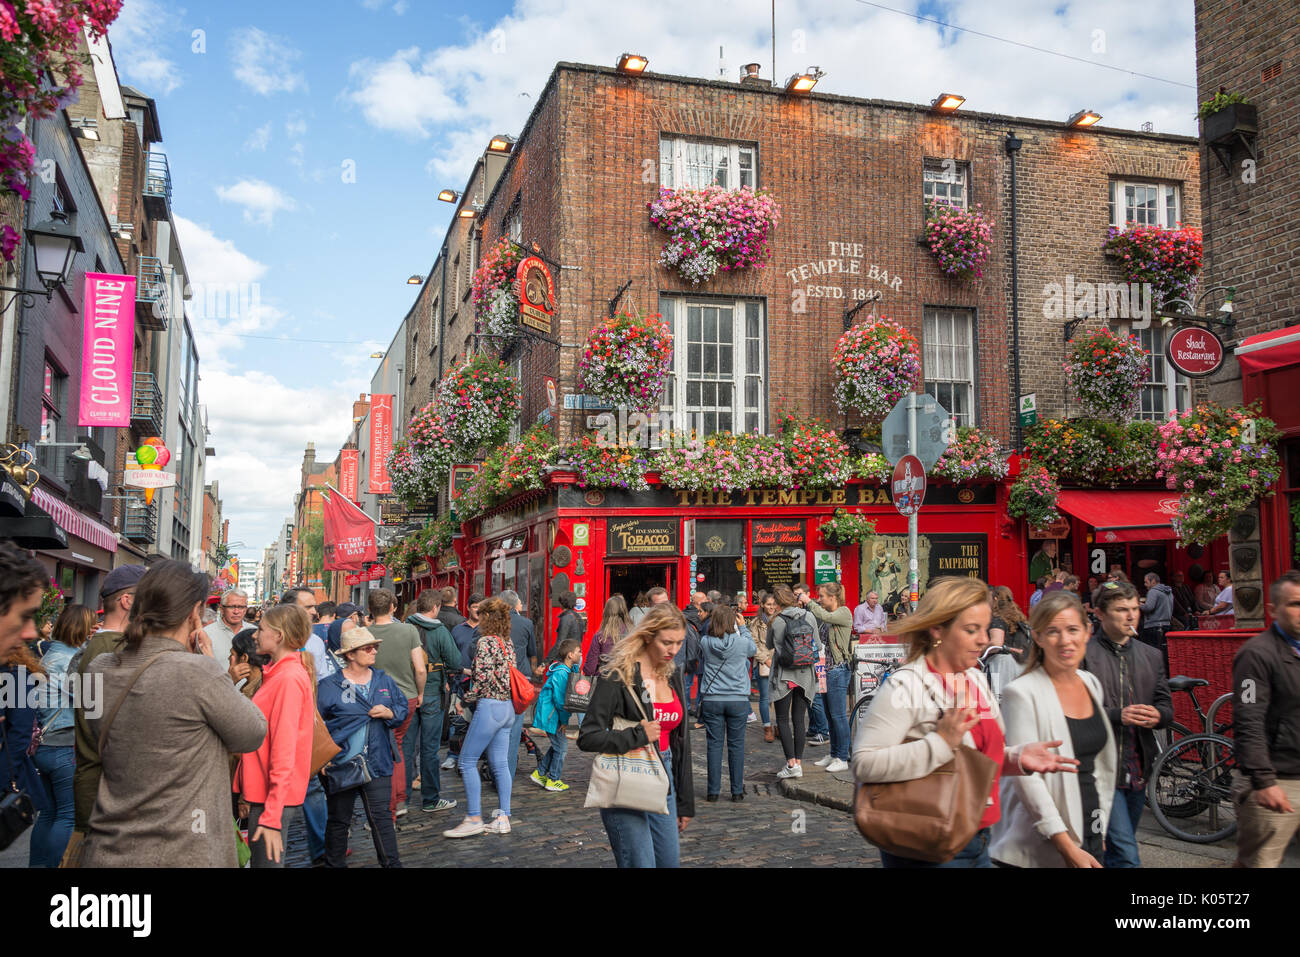 DUBLIN, Irland - 12. August: Leute auf der Straße vor der berühmten Temple Bar in Dublin, Irland Stockfoto